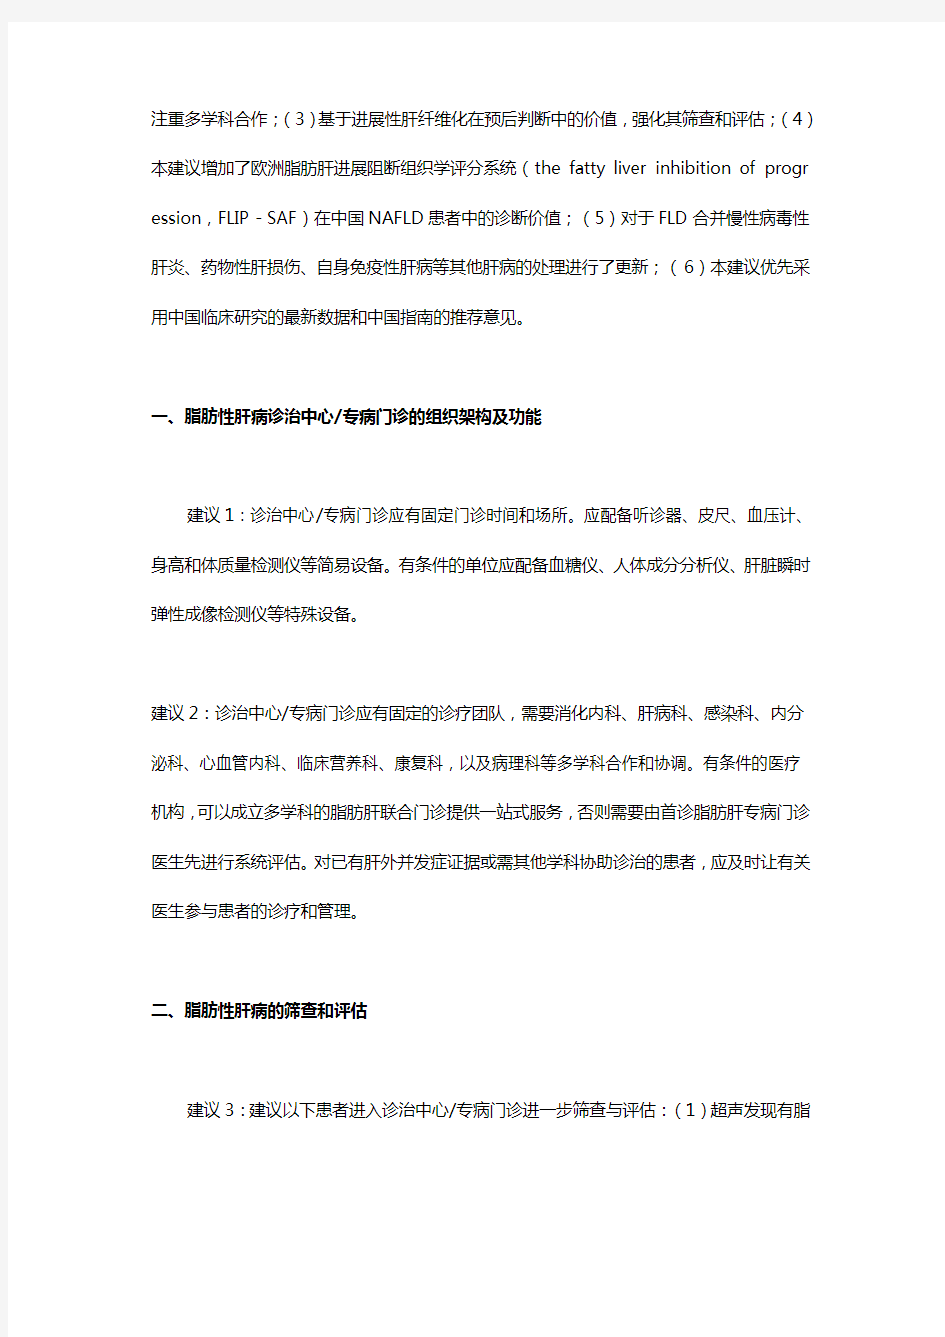 中国脂肪性肝病诊疗规范化的专家建议2019修订版